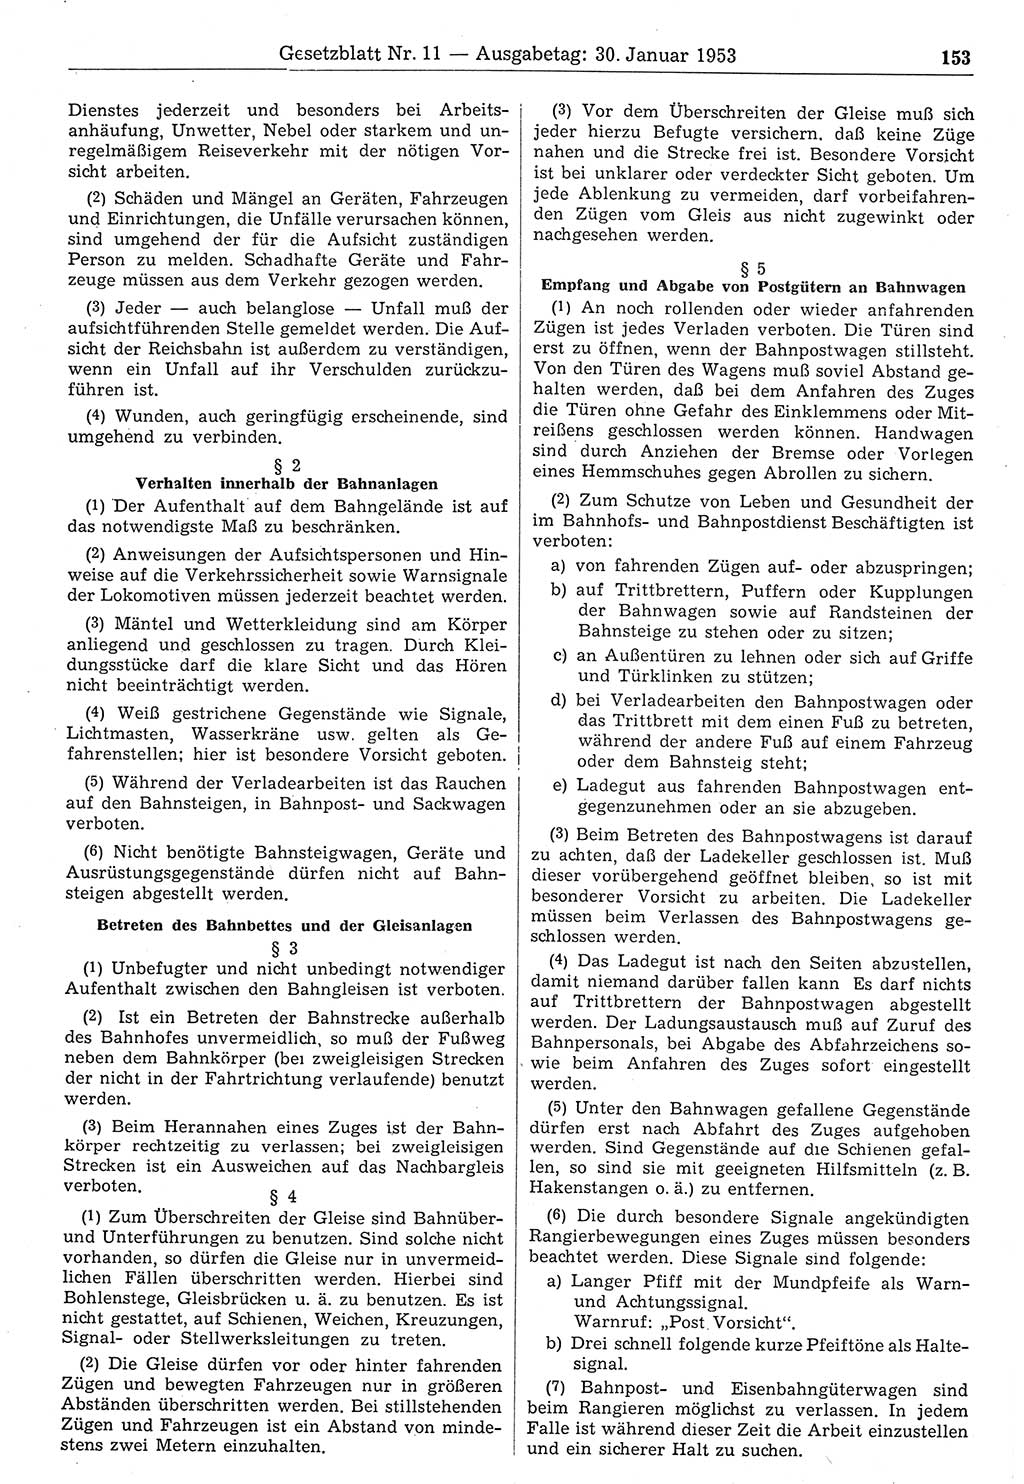 Gesetzblatt (GBl.) der Deutschen Demokratischen Republik (DDR) 1953, Seite 153 (GBl. DDR 1953, S. 153)